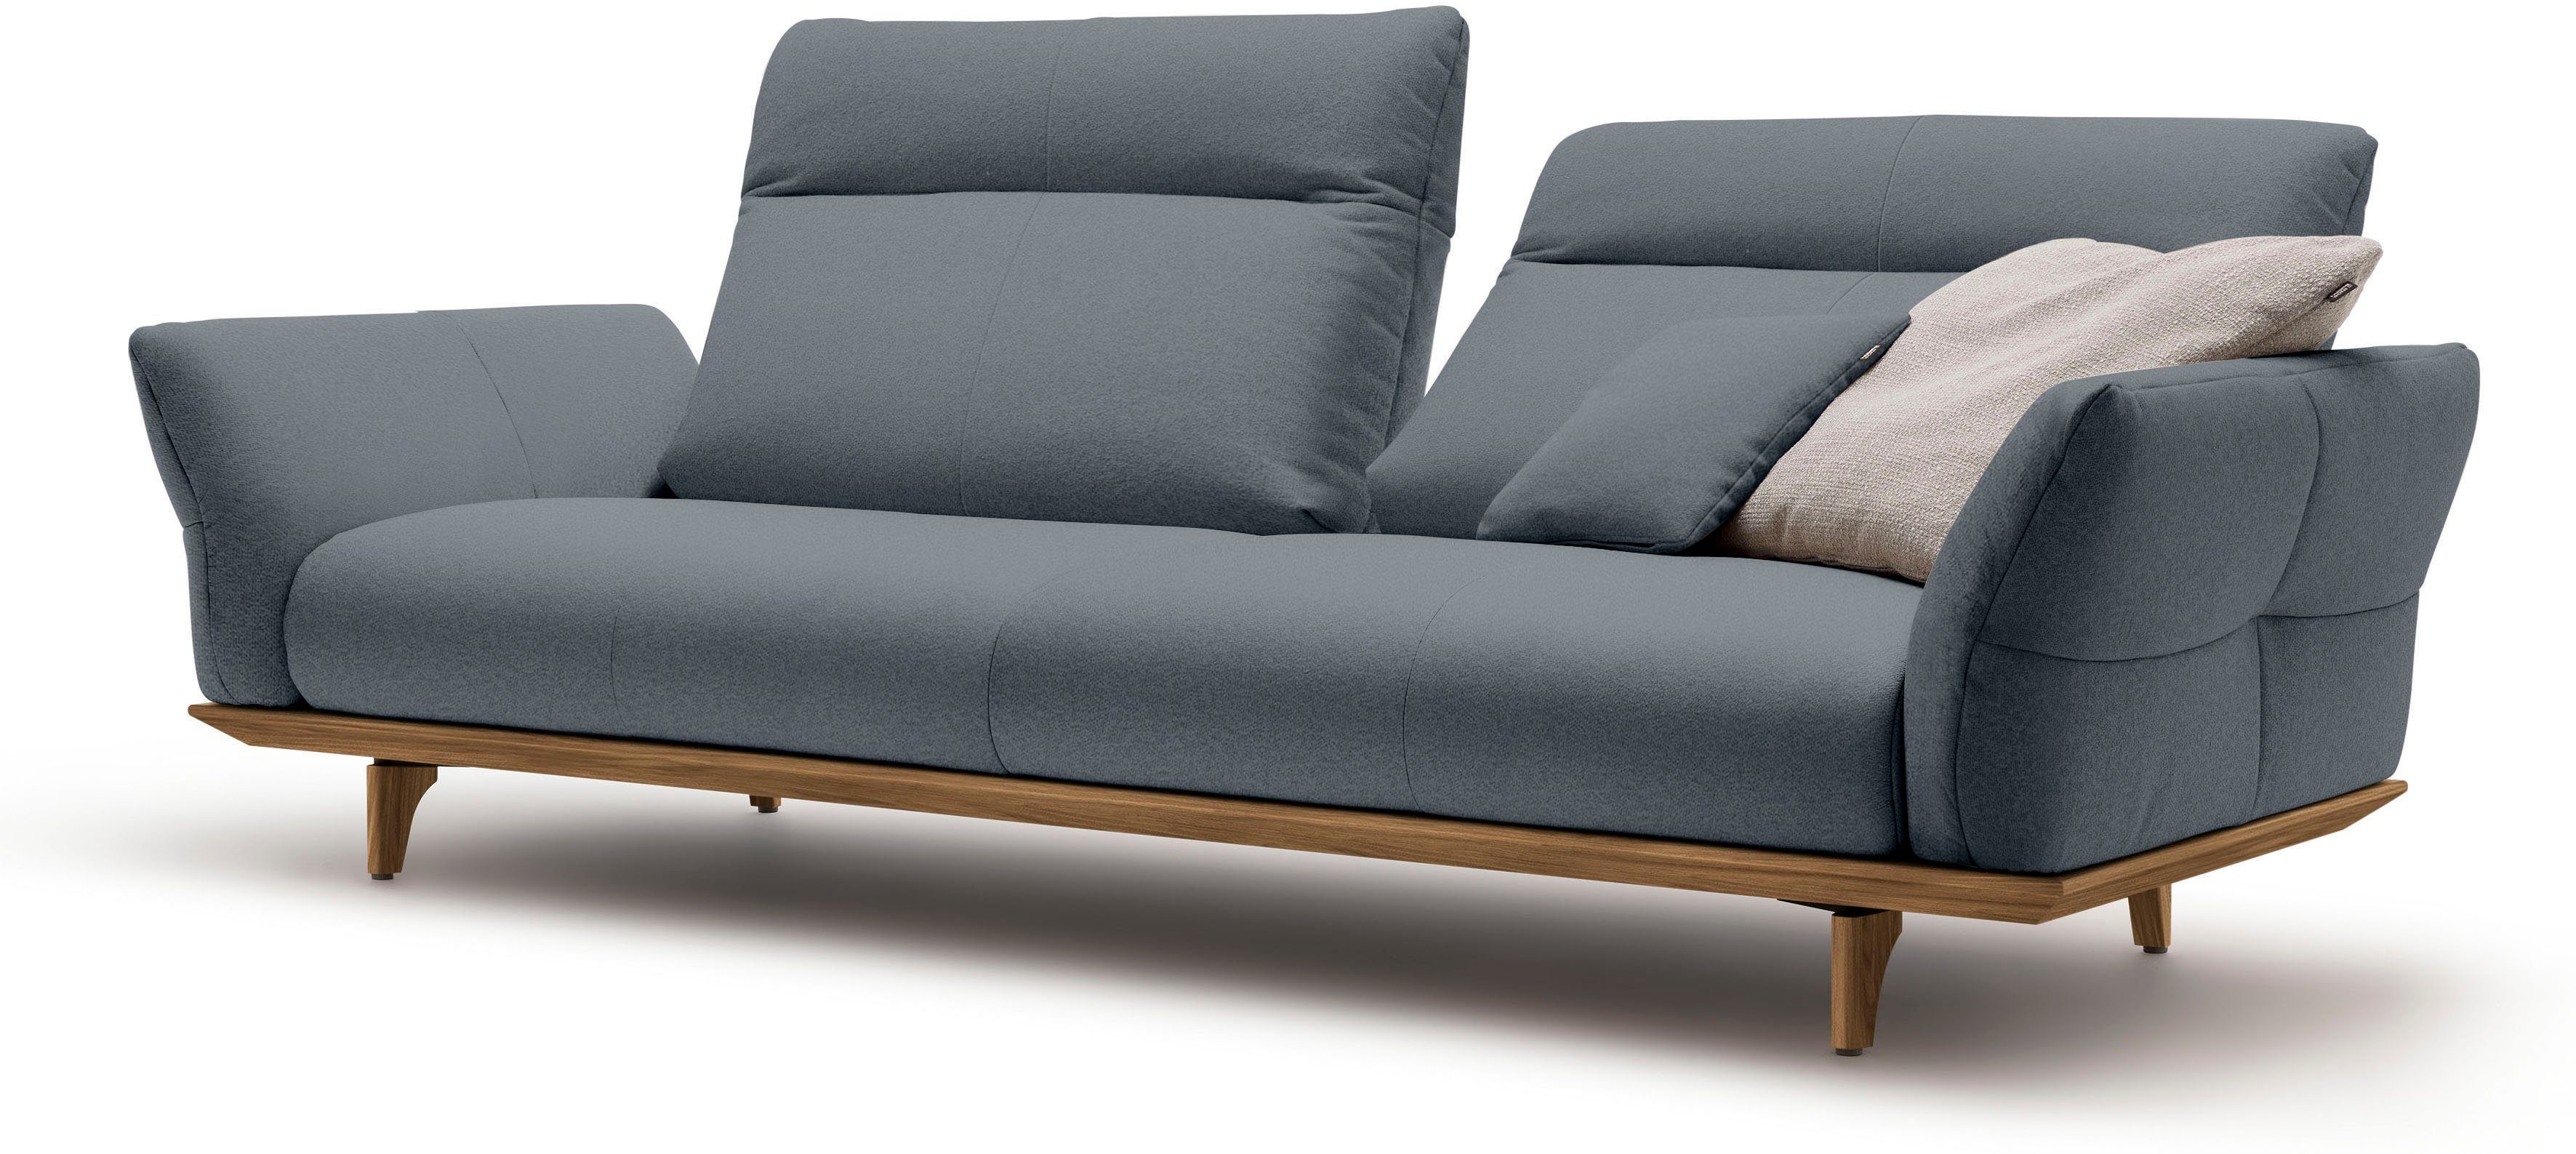 hülsta sofa 3,5-Sitzer hs.460, Sockel Breite und Füße in Nussbaum, cm 228